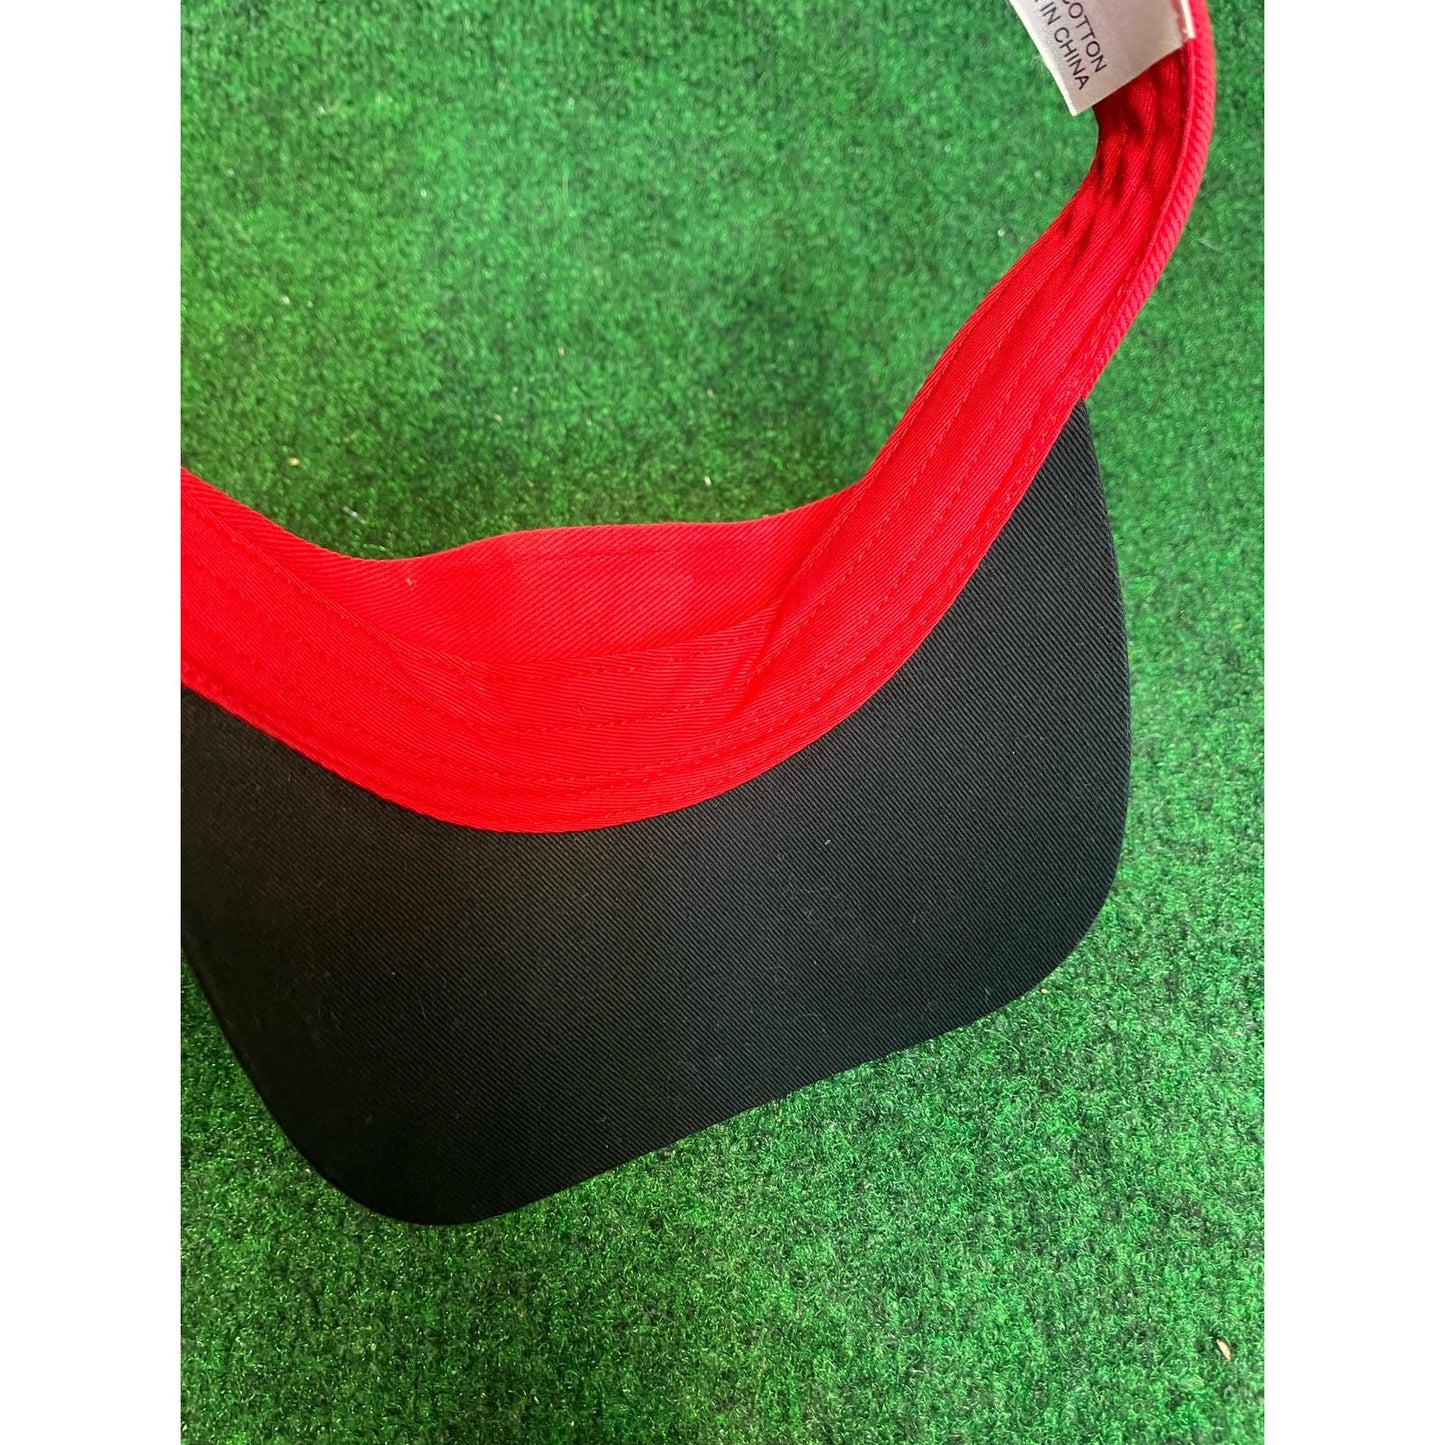 90s University of Nebraska Red & Black Adjustable Visor Hat Unisex Golf